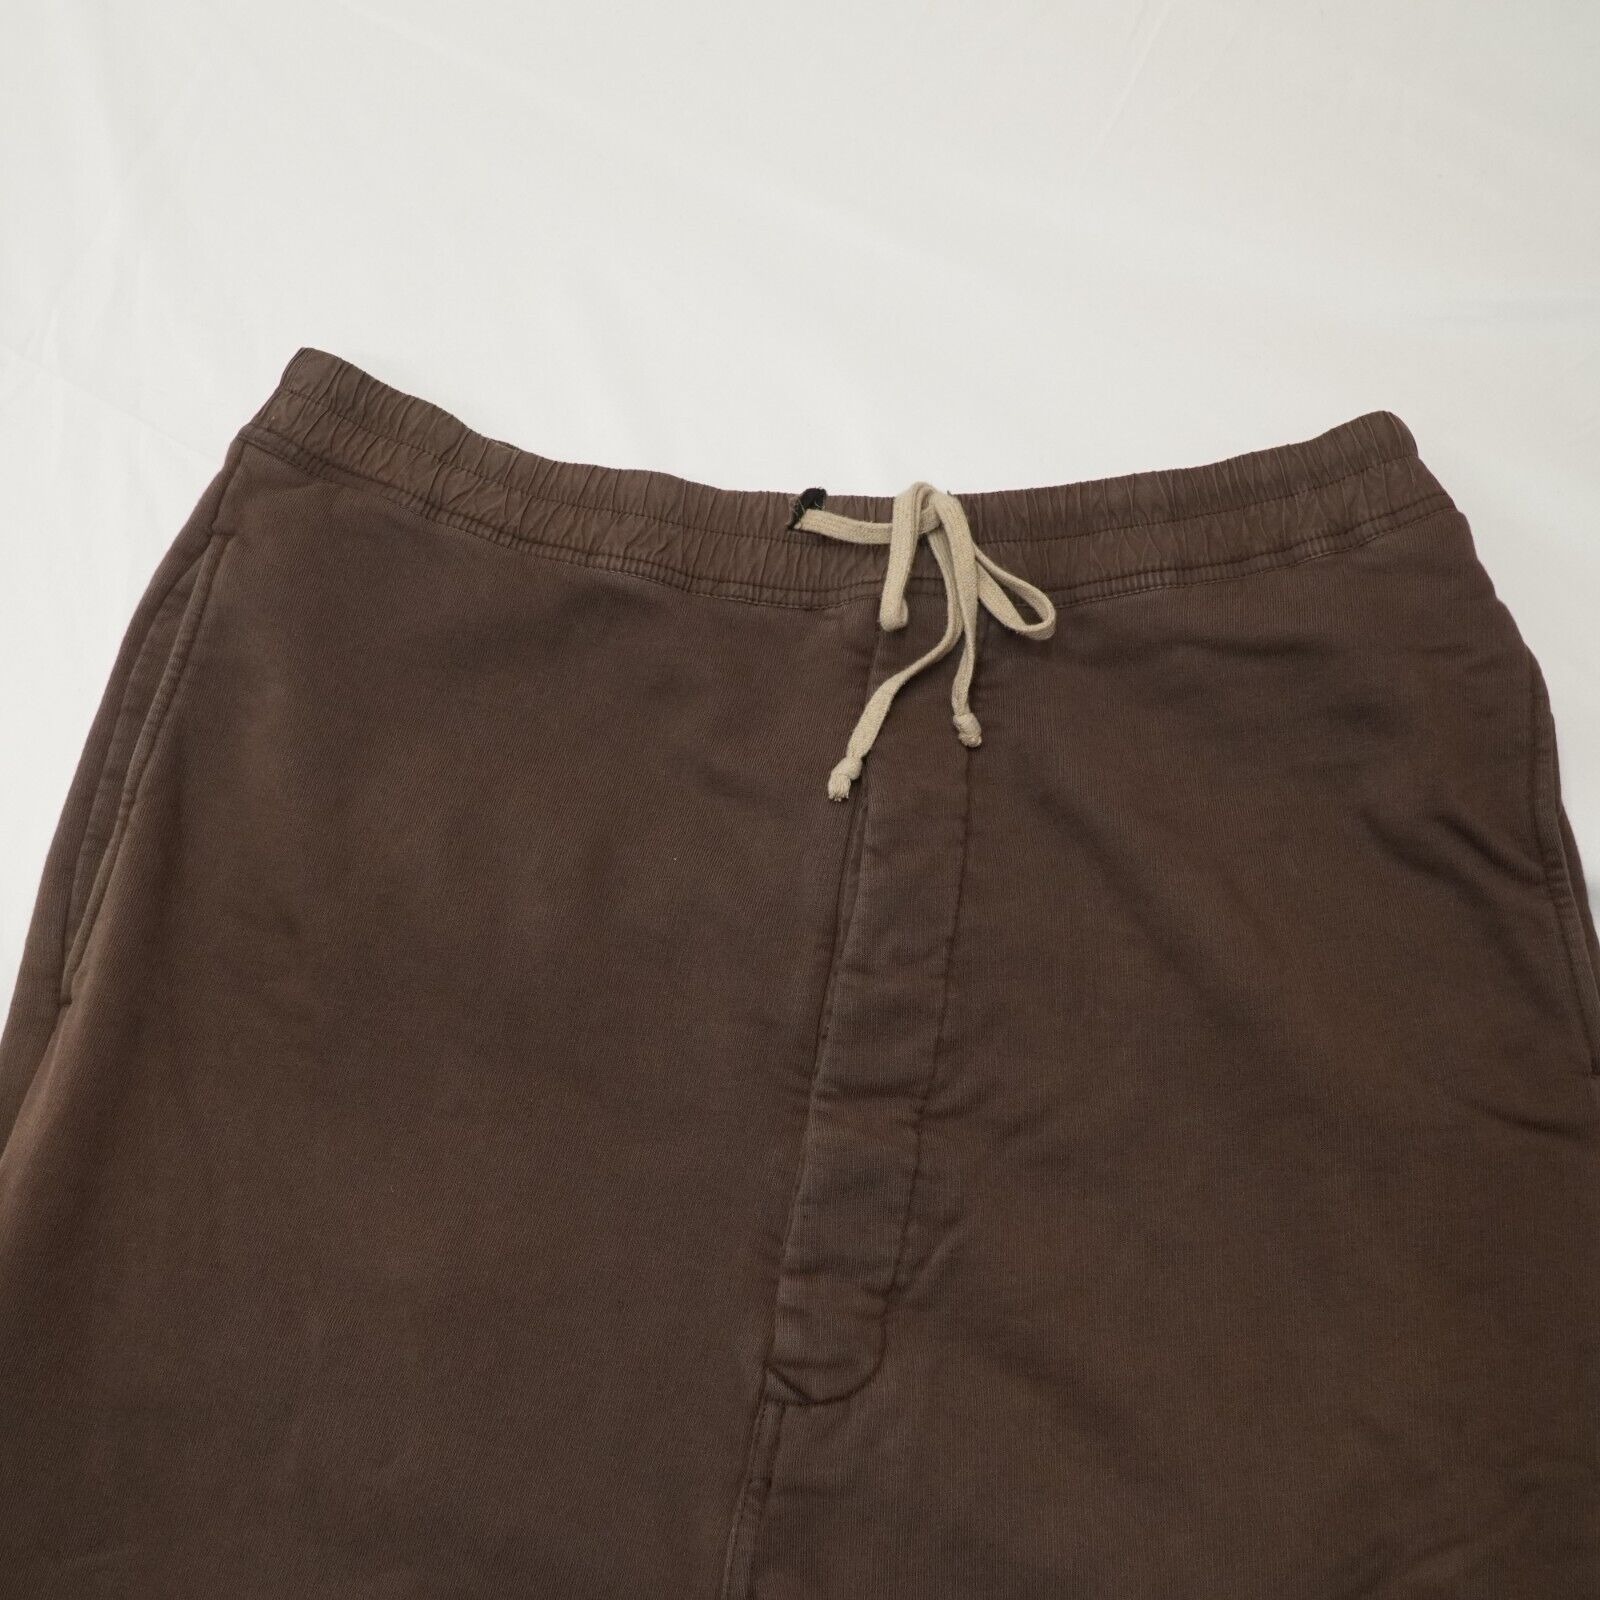 Rick Shorts Drop Crotch Cotton Macassar Brown Large - 4